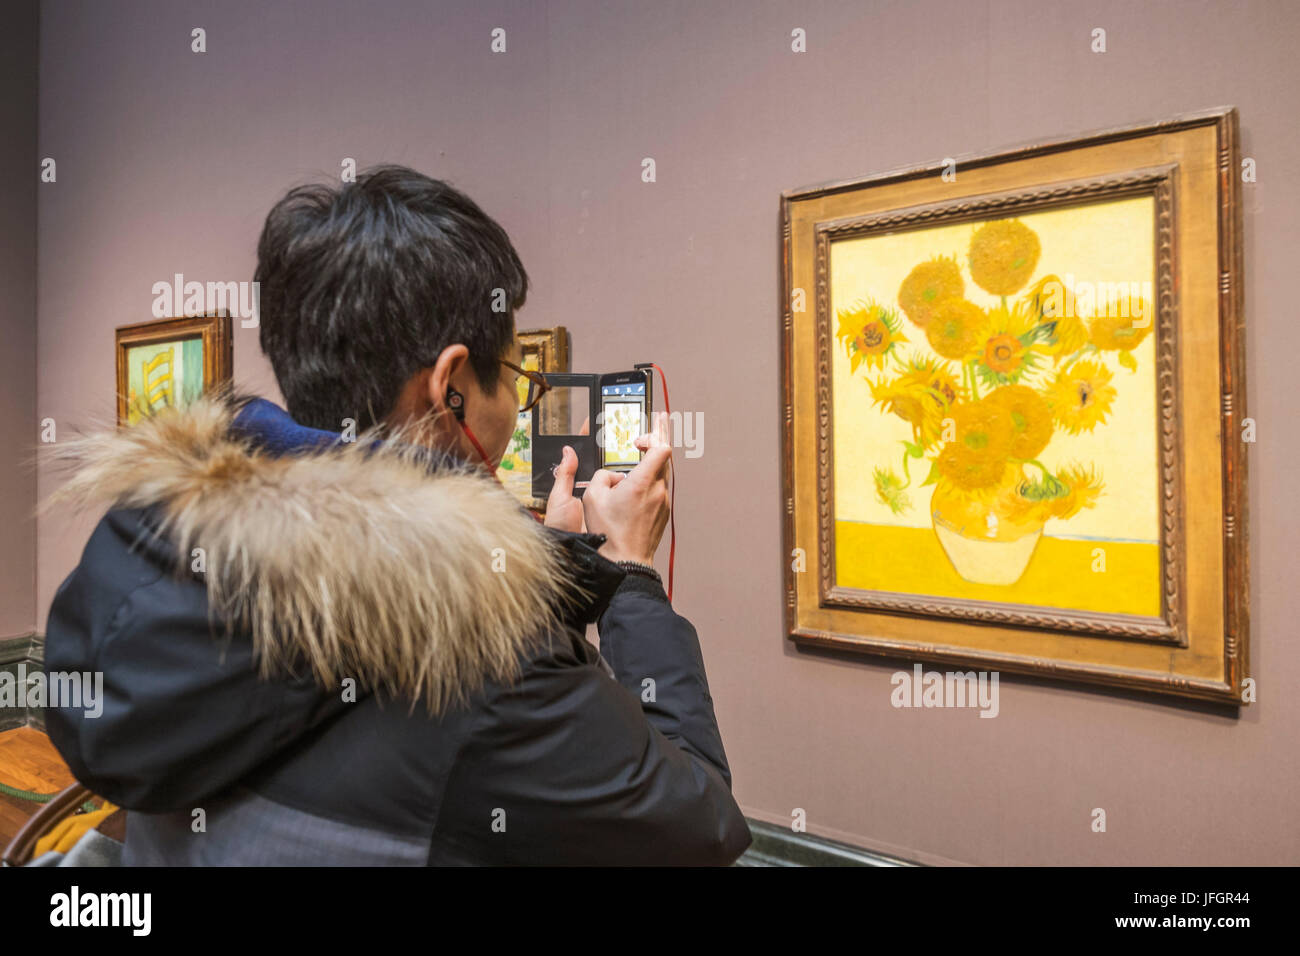 Inghilterra, Londra, Trafalgar Square e la Galleria Nazionale, visitatori e Van Gogh pittura Girasoli Foto Stock